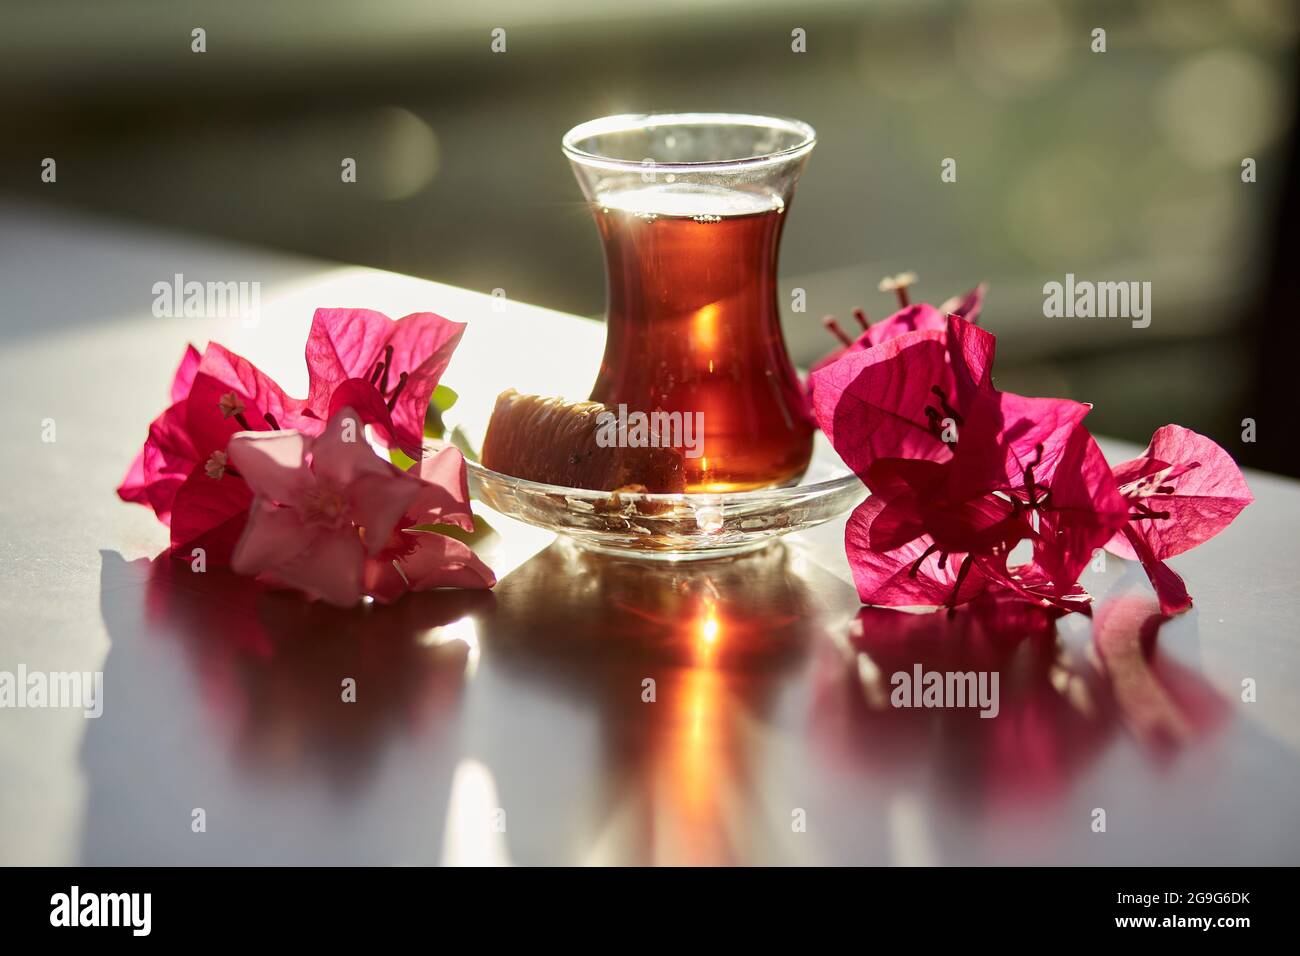 Türkisches Vergnügen und traditionelles Glas türkischen Tees mit Bougainvillea-Blumen. Romantisches Dinner-Konzept. Entspannendes, beruhigendes Getränk Reise-Türkei-Konzept. Helles, entspannendes Getränk. Hochwertige Fotos Stockfoto